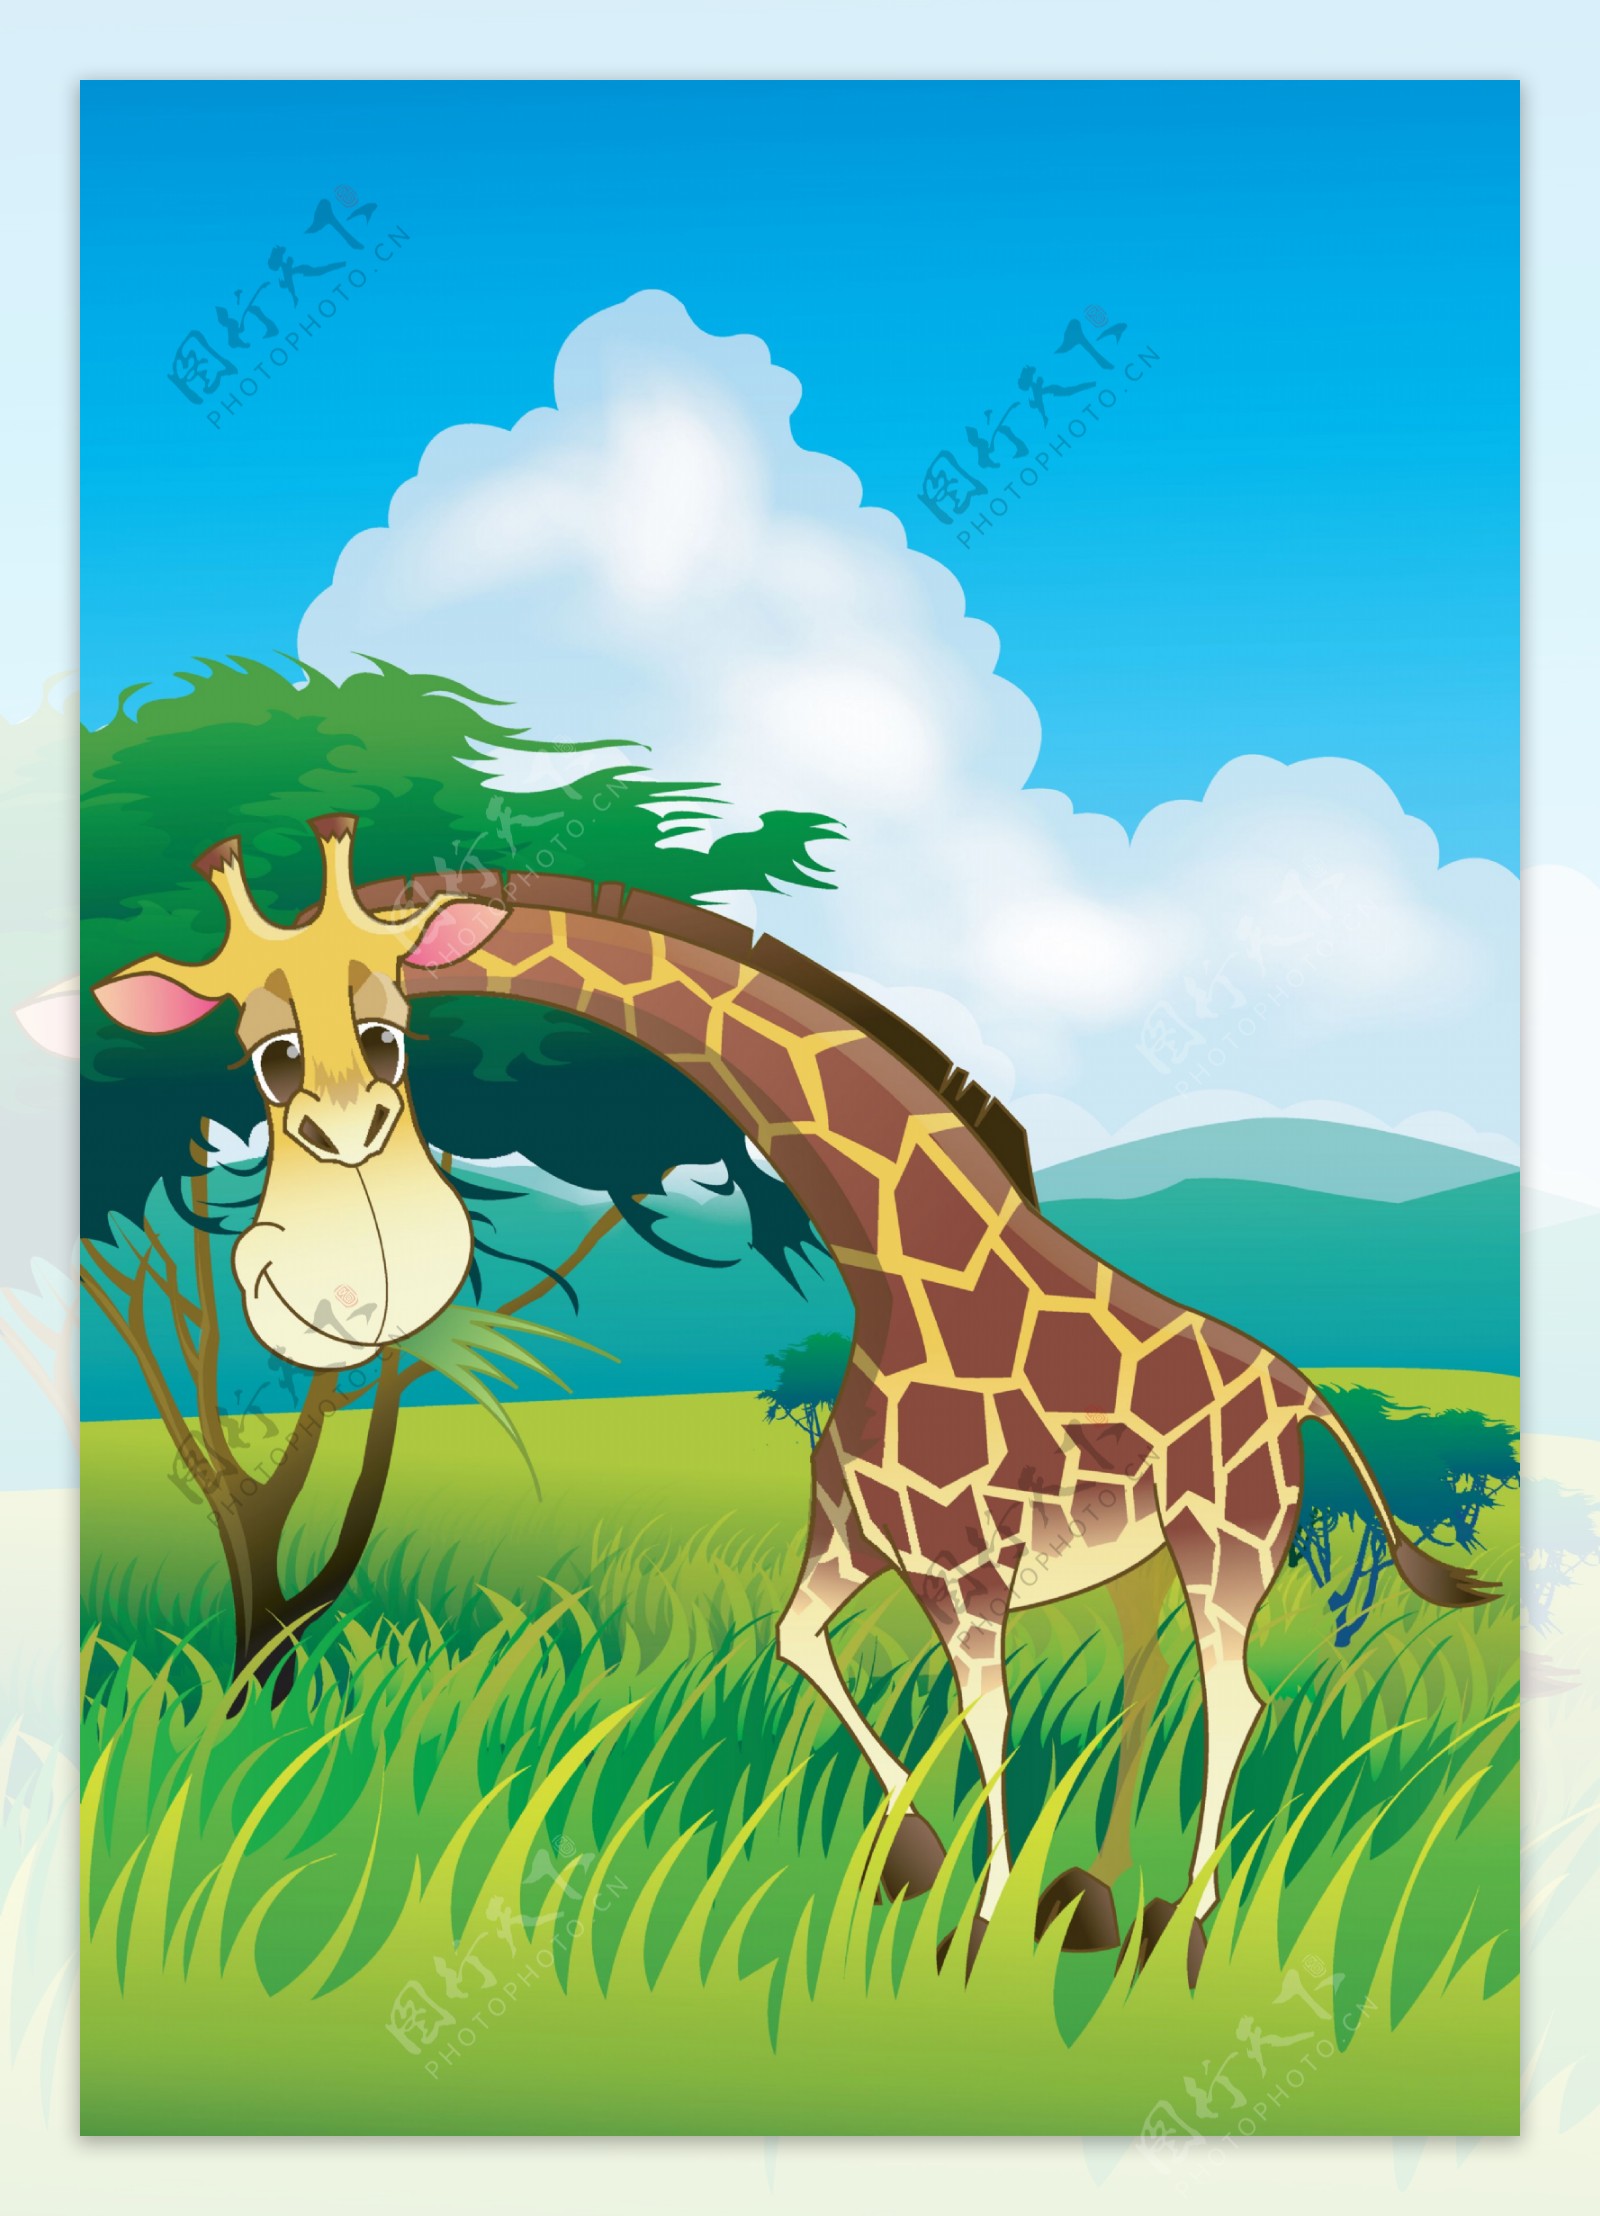 可爱卡通长颈鹿图片